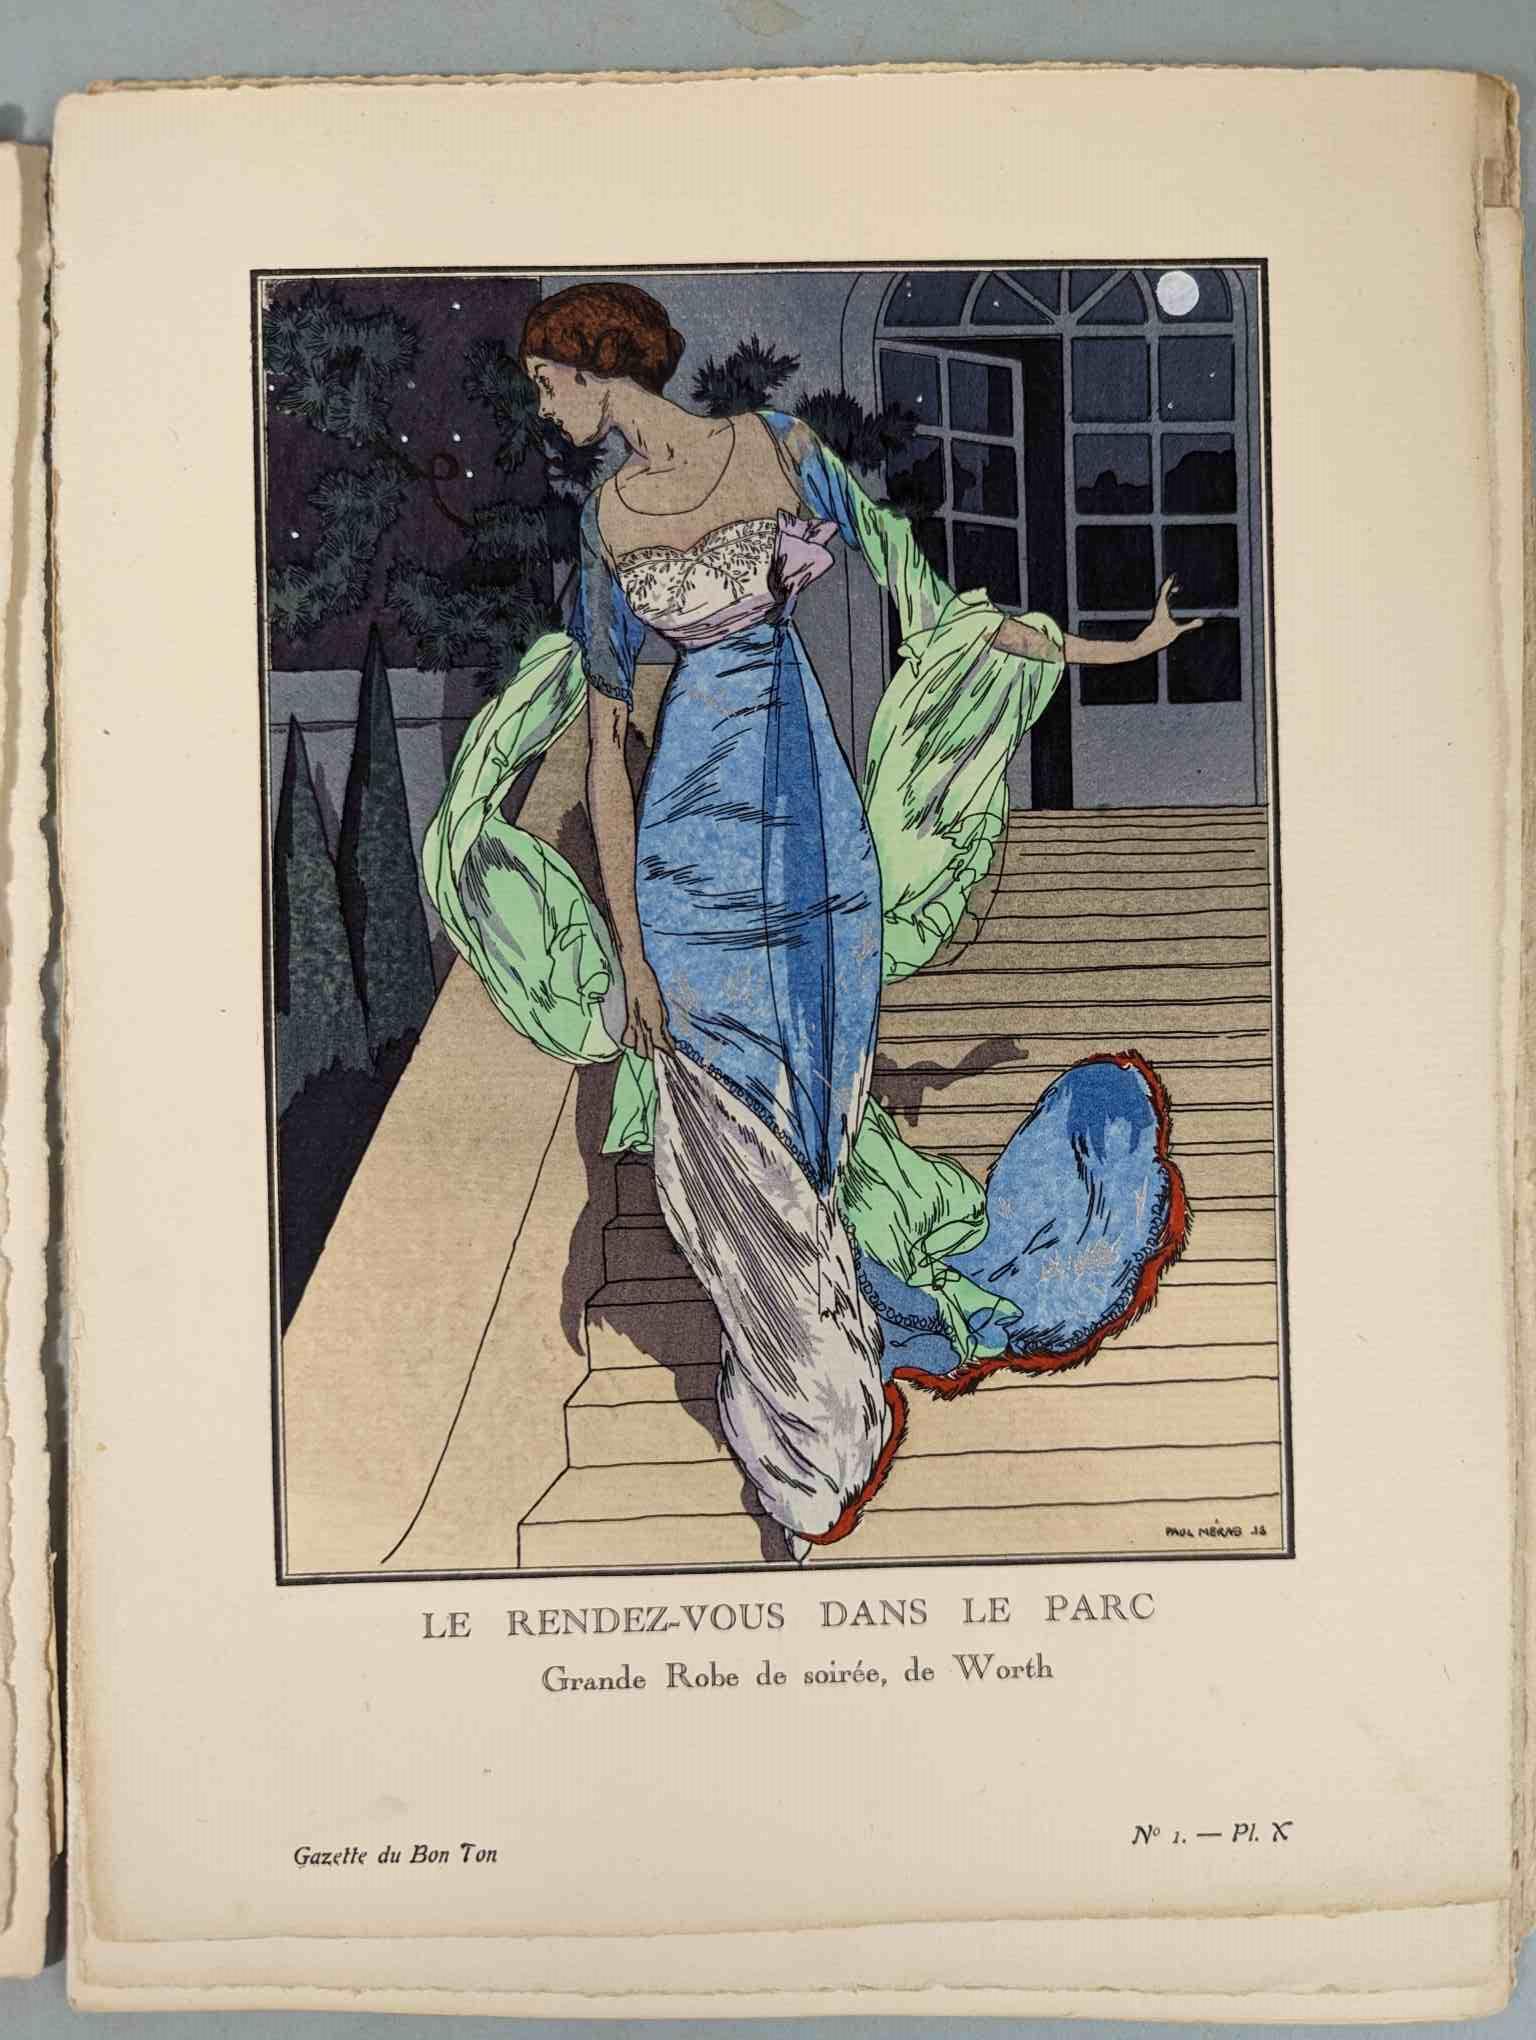 FASHION. VOGEL, Lucien. GAZETTE DU BON TON: Art-Modes & Frivolités, Paris 1913-14, 4 vol. - Image 8 of 54